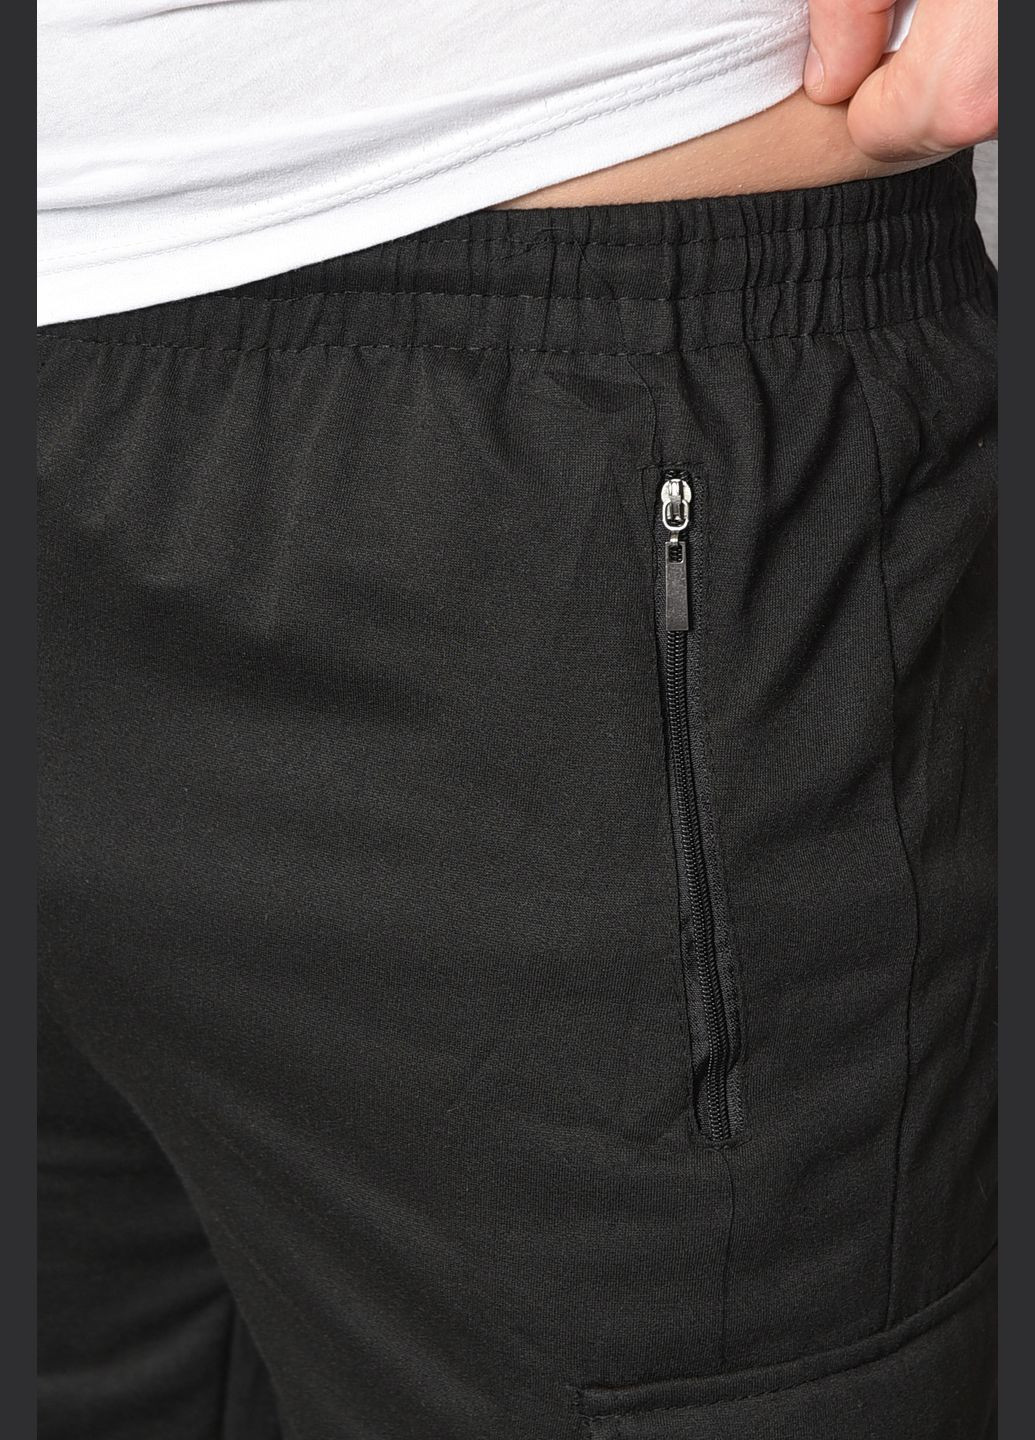 Спортивні штани чоловічі чорного кольору Let's Shop (293055795)